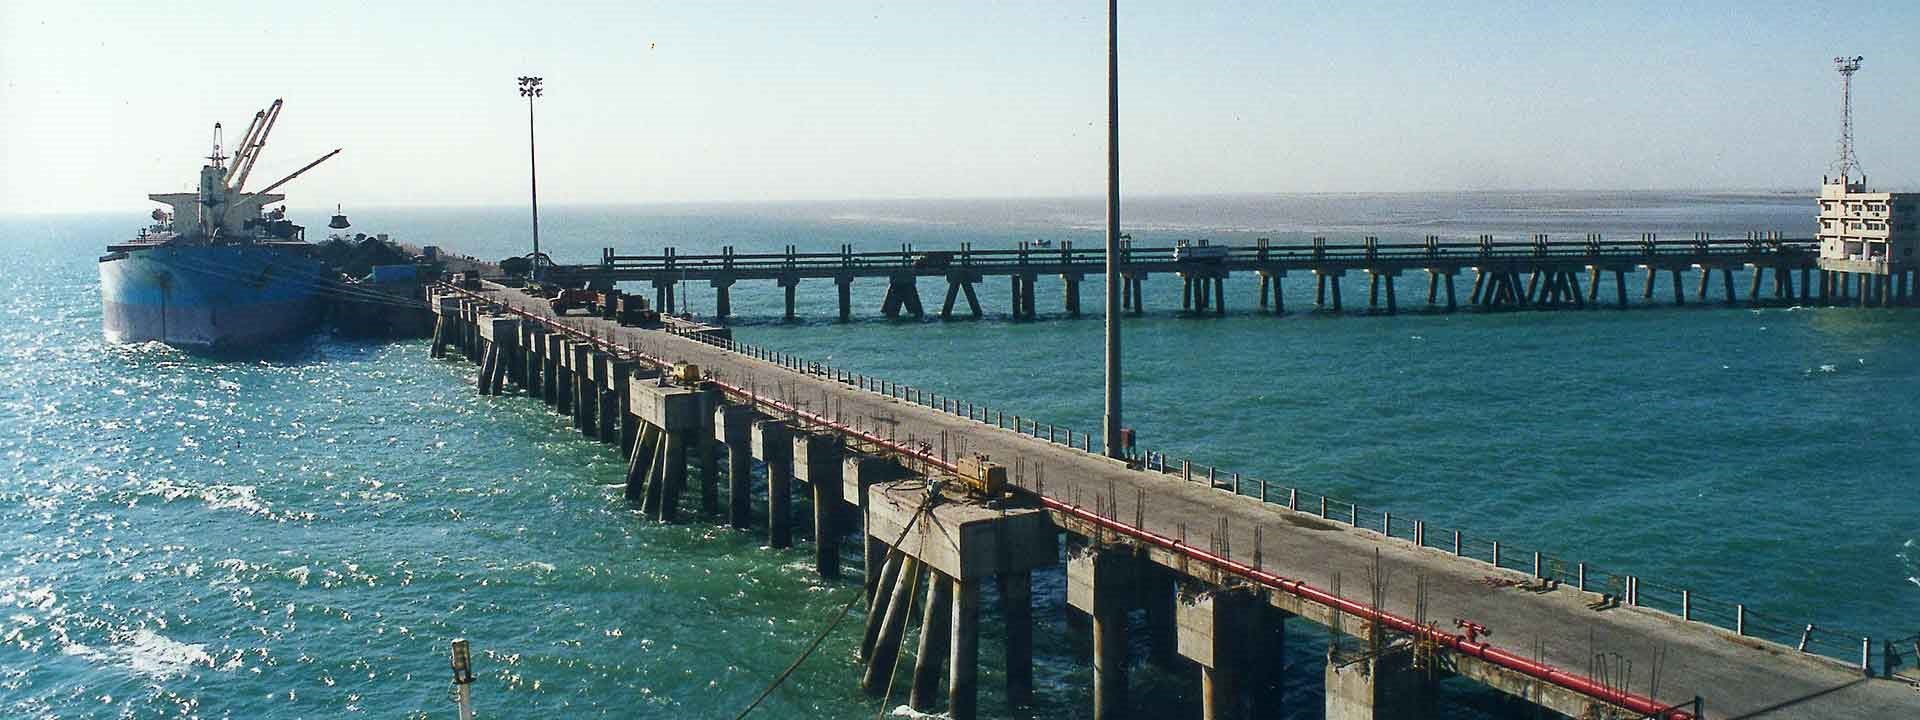 Adani Port Gujarat- L&T Construction